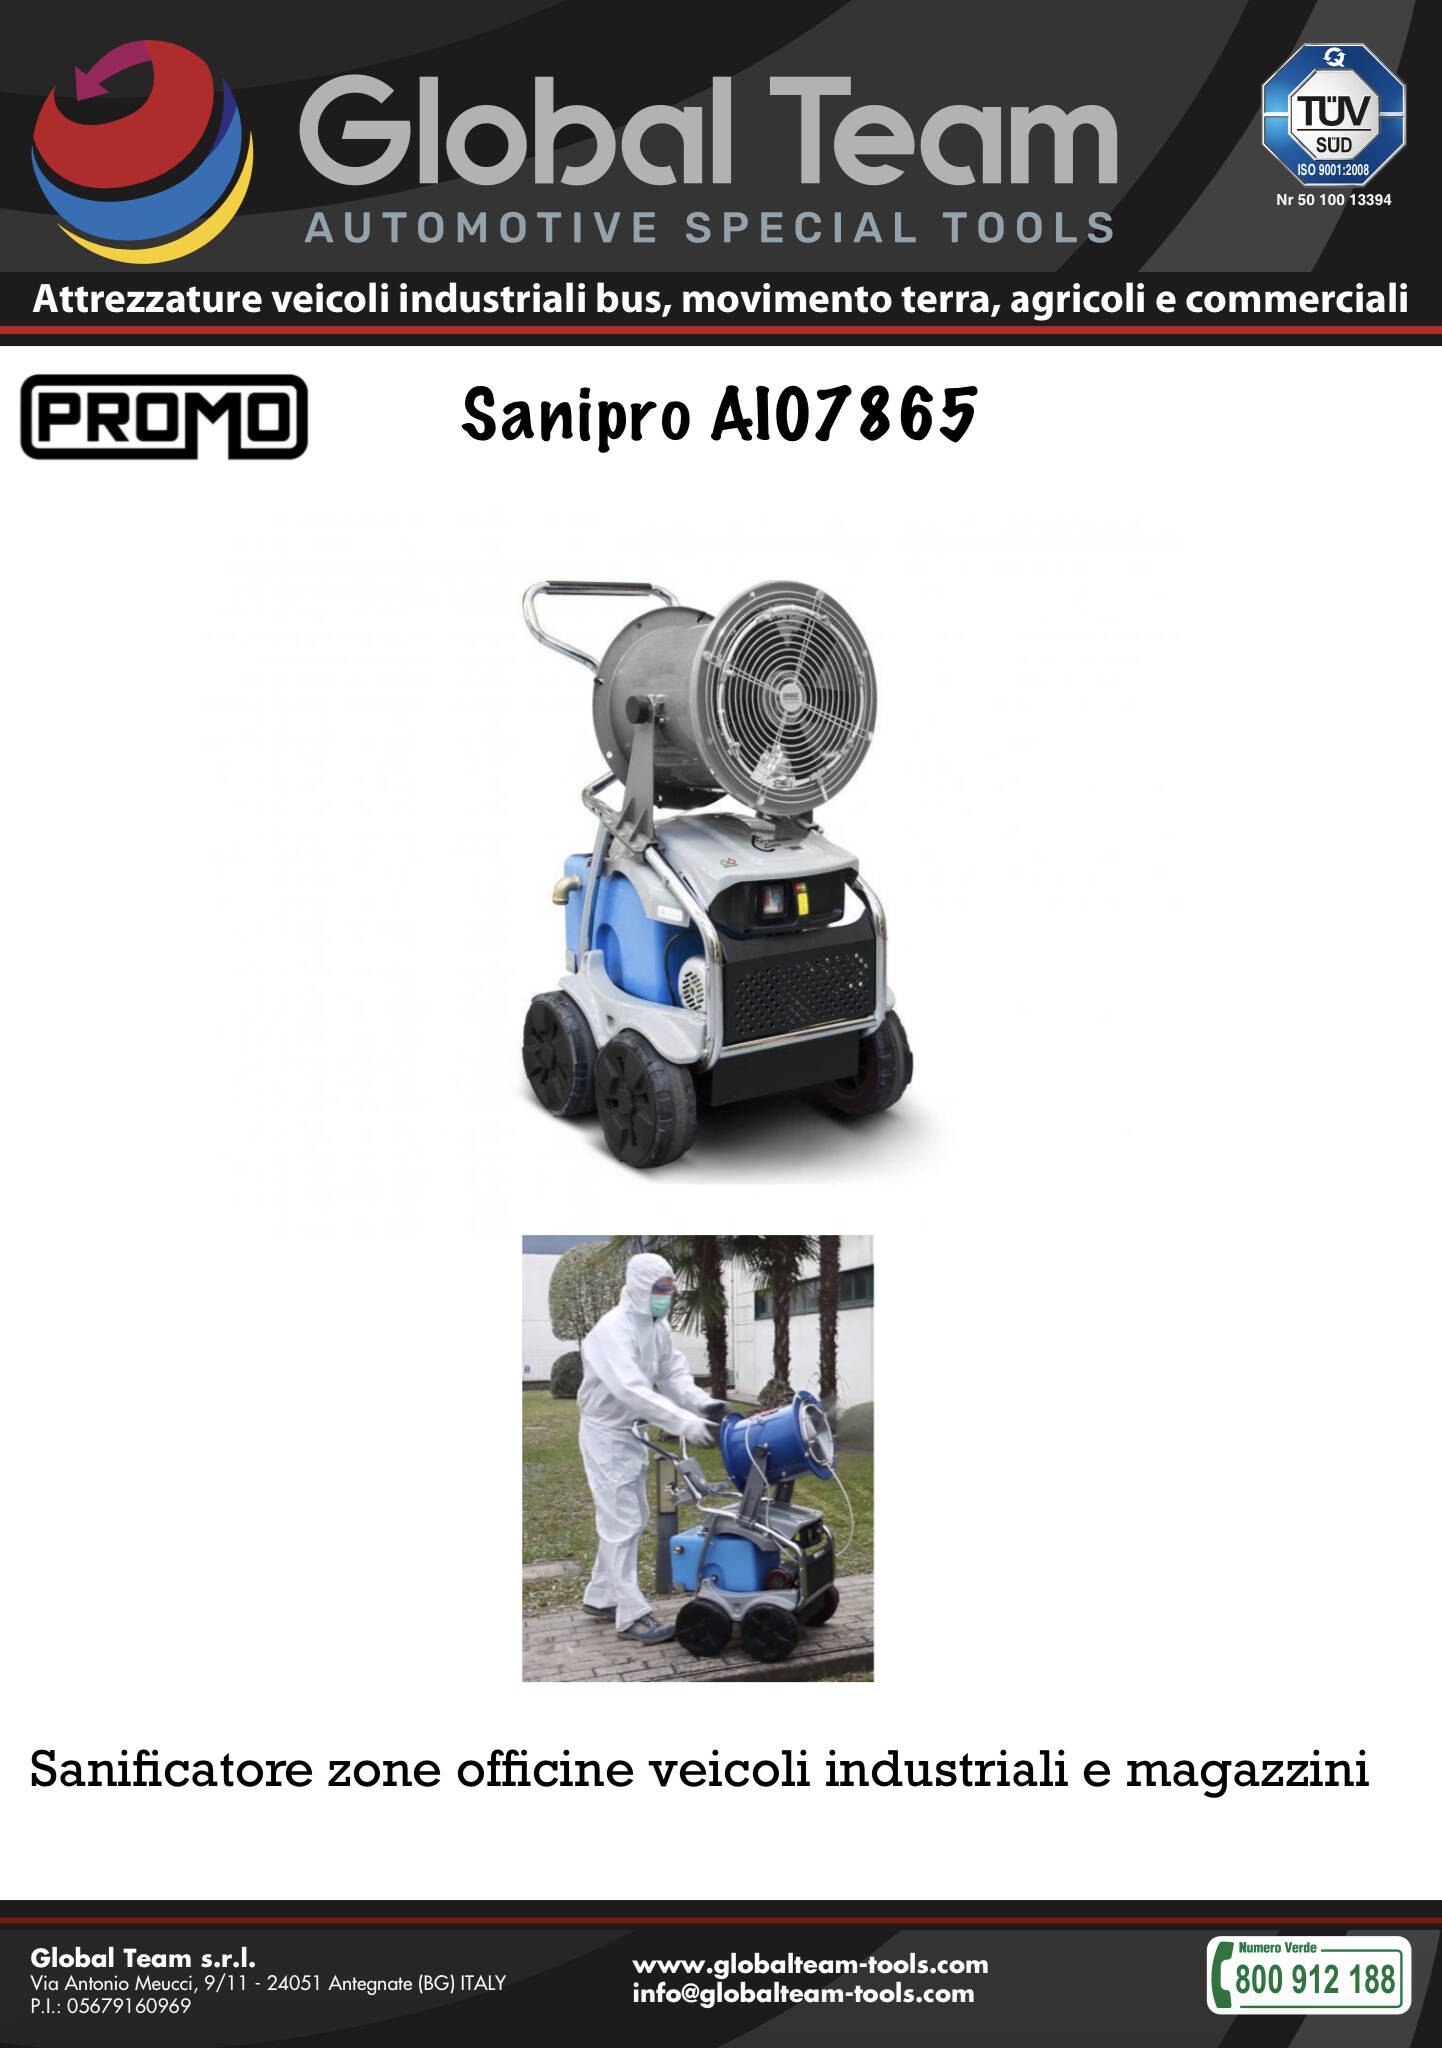 Promozione Sanipro AI07865 per sanificare zone lavoro in maniera professionale e certificata . Rapido per coprire zona lavoro 